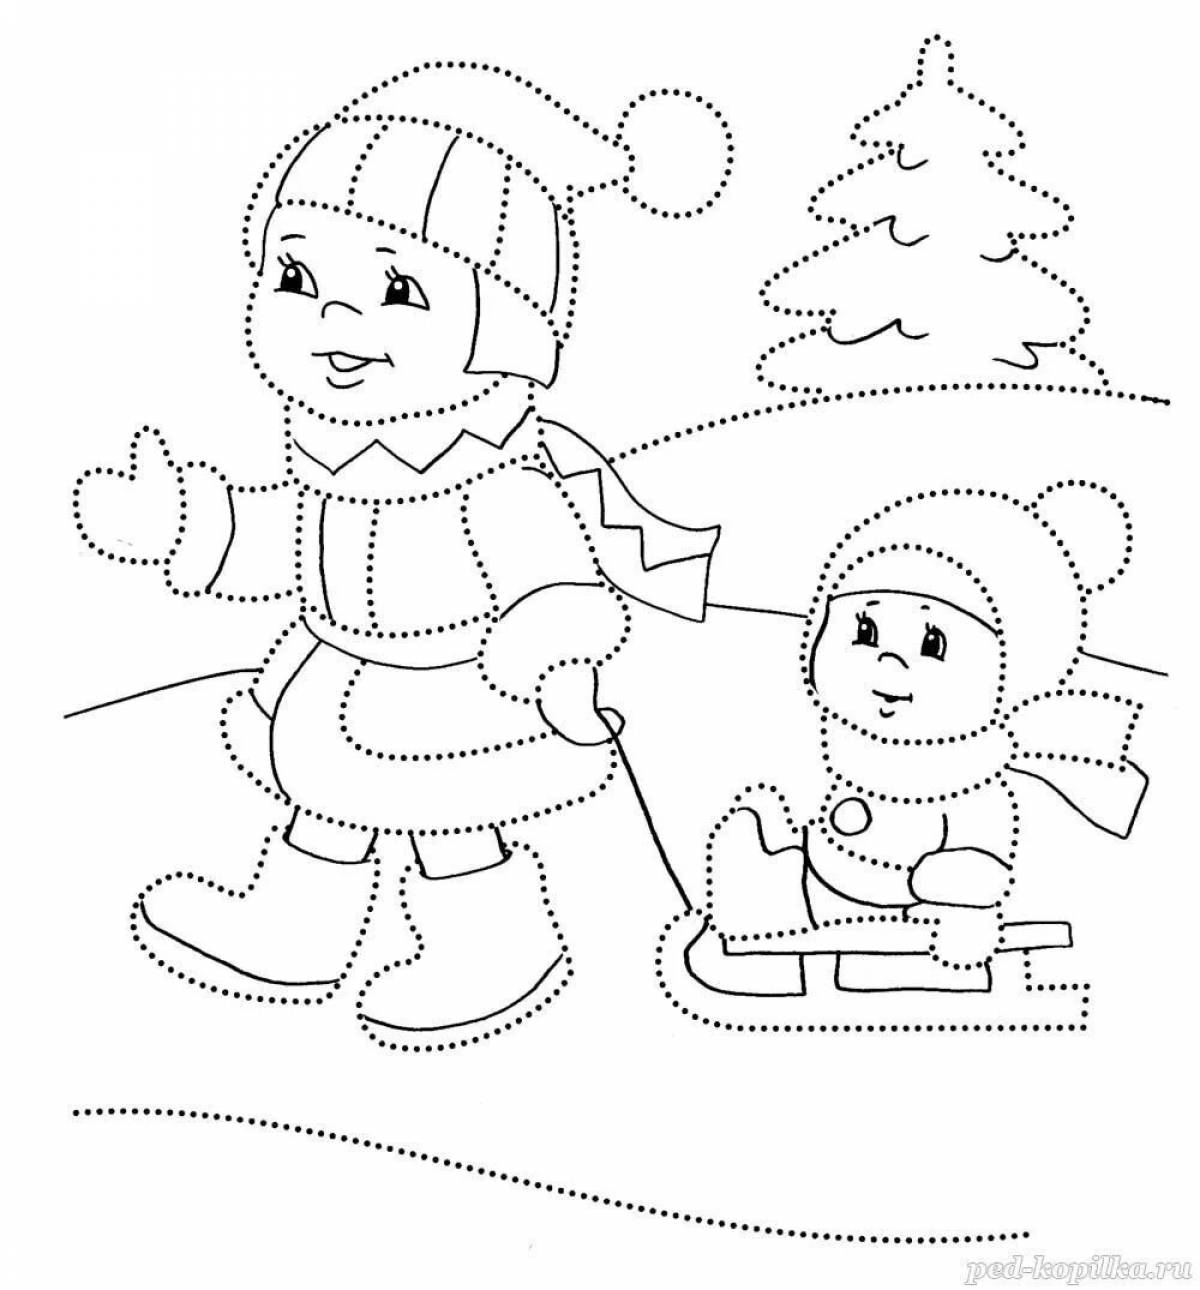 Violent winter coloring for kids